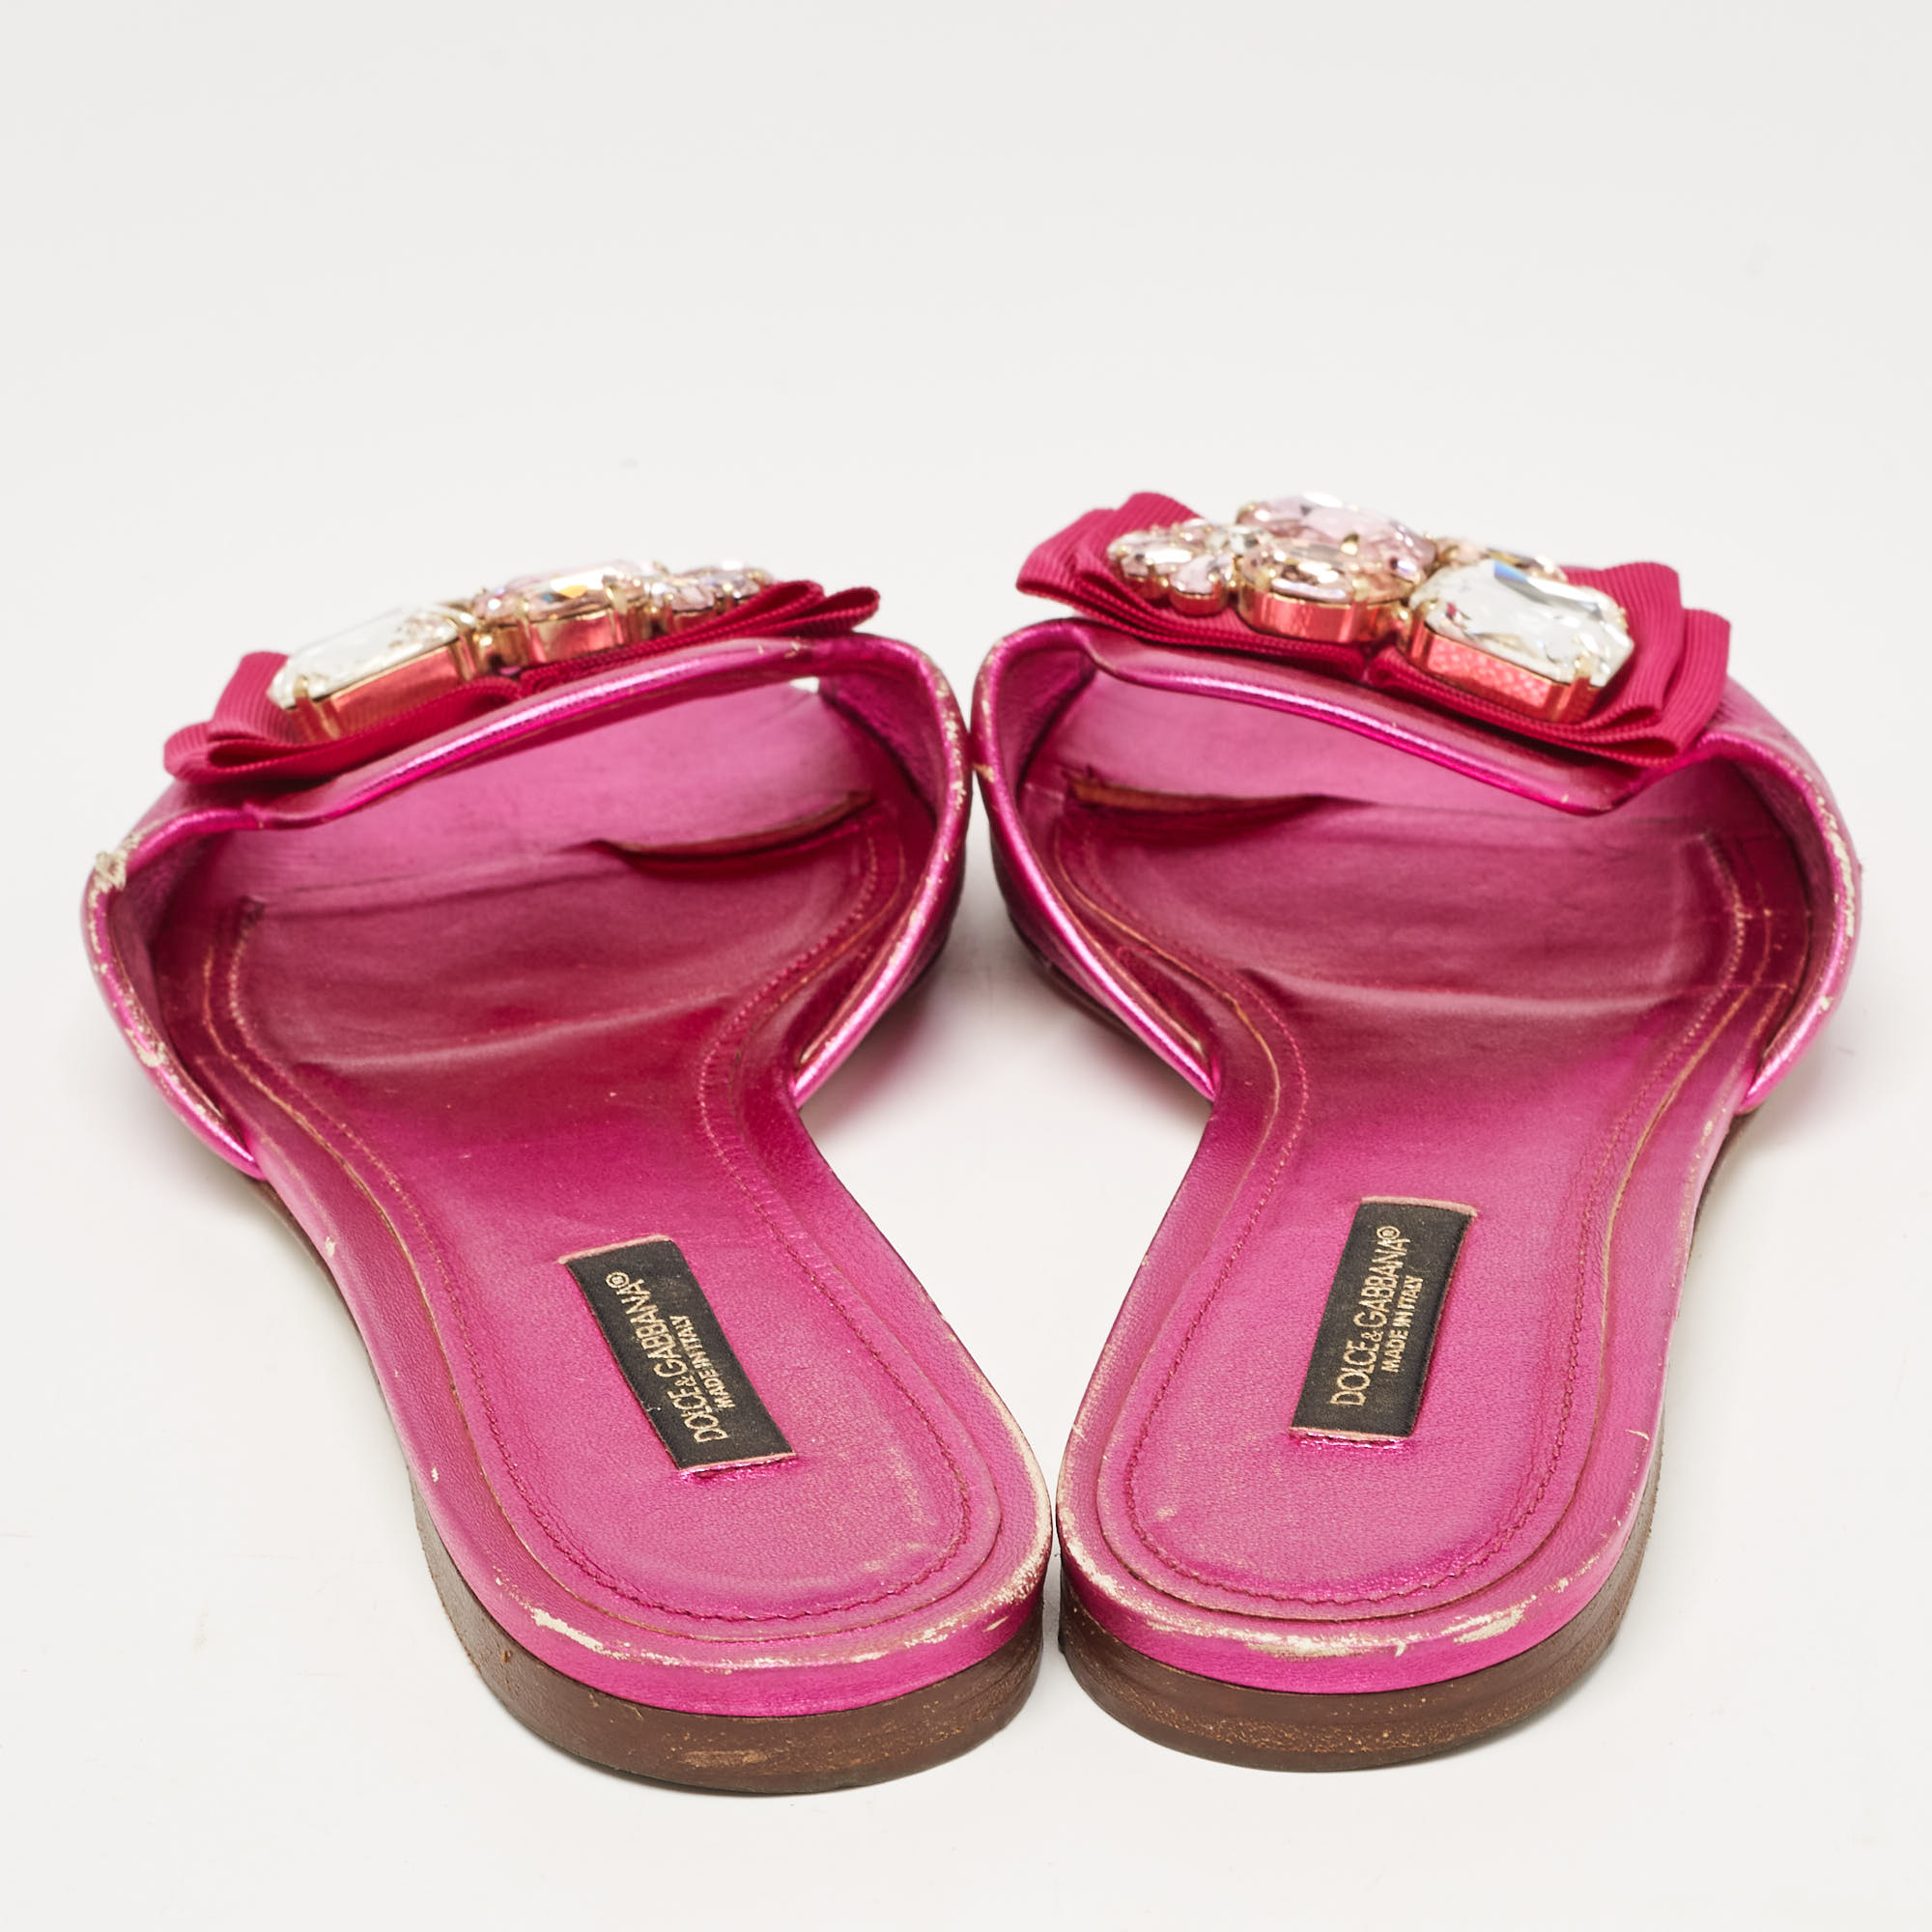 Dolce & Gabbana Pink Leather Crystal Embellished Flat Slides Size 37.5